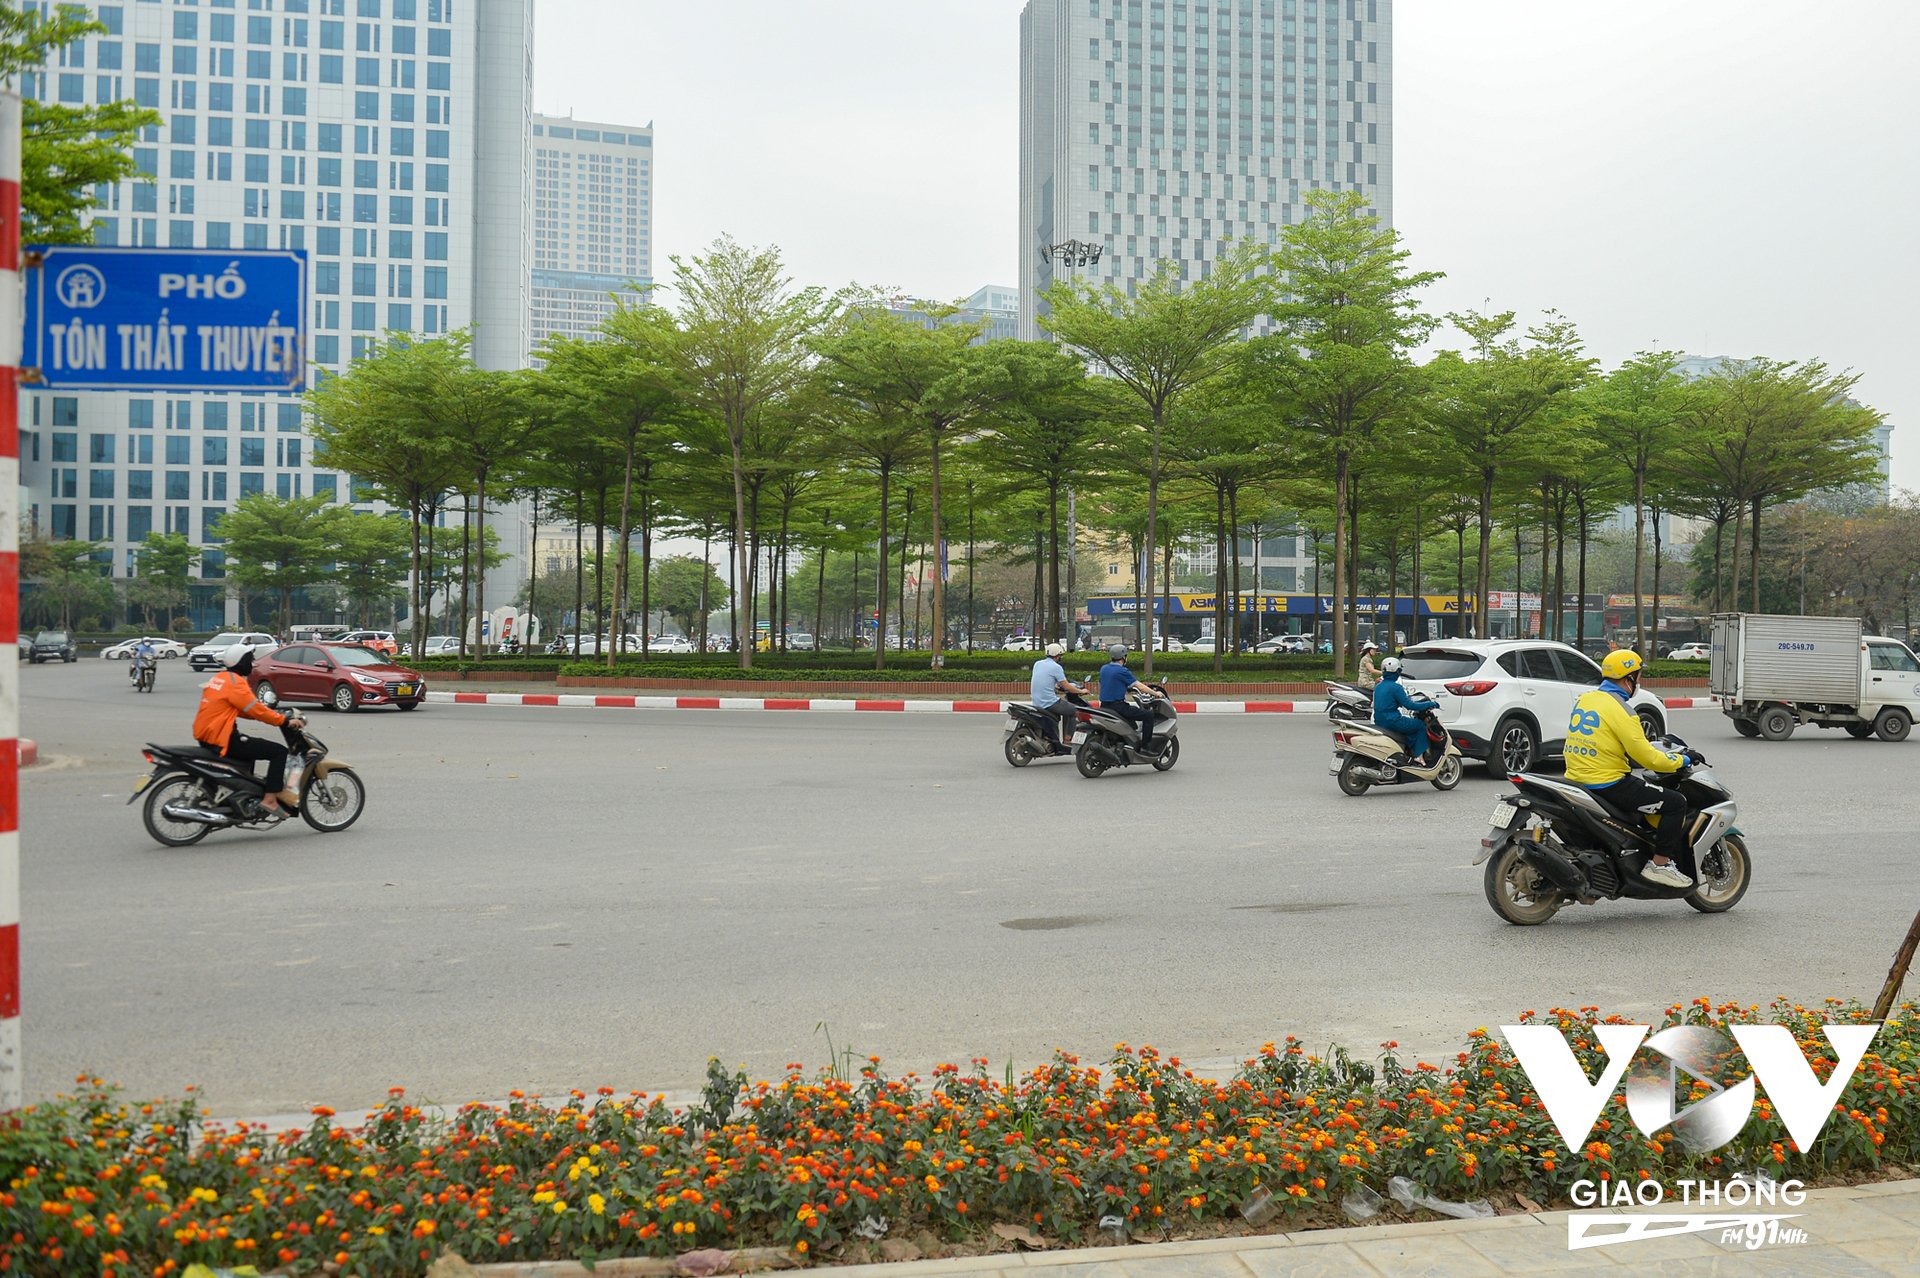 Những ngày này đi qua một số tuyến phố của Hà Nội không khó để bắt gặp hình ảnh những cây bàng Đài Loan (Bàng lá nhỏ) đã bật lá mới màu xanh mướt.